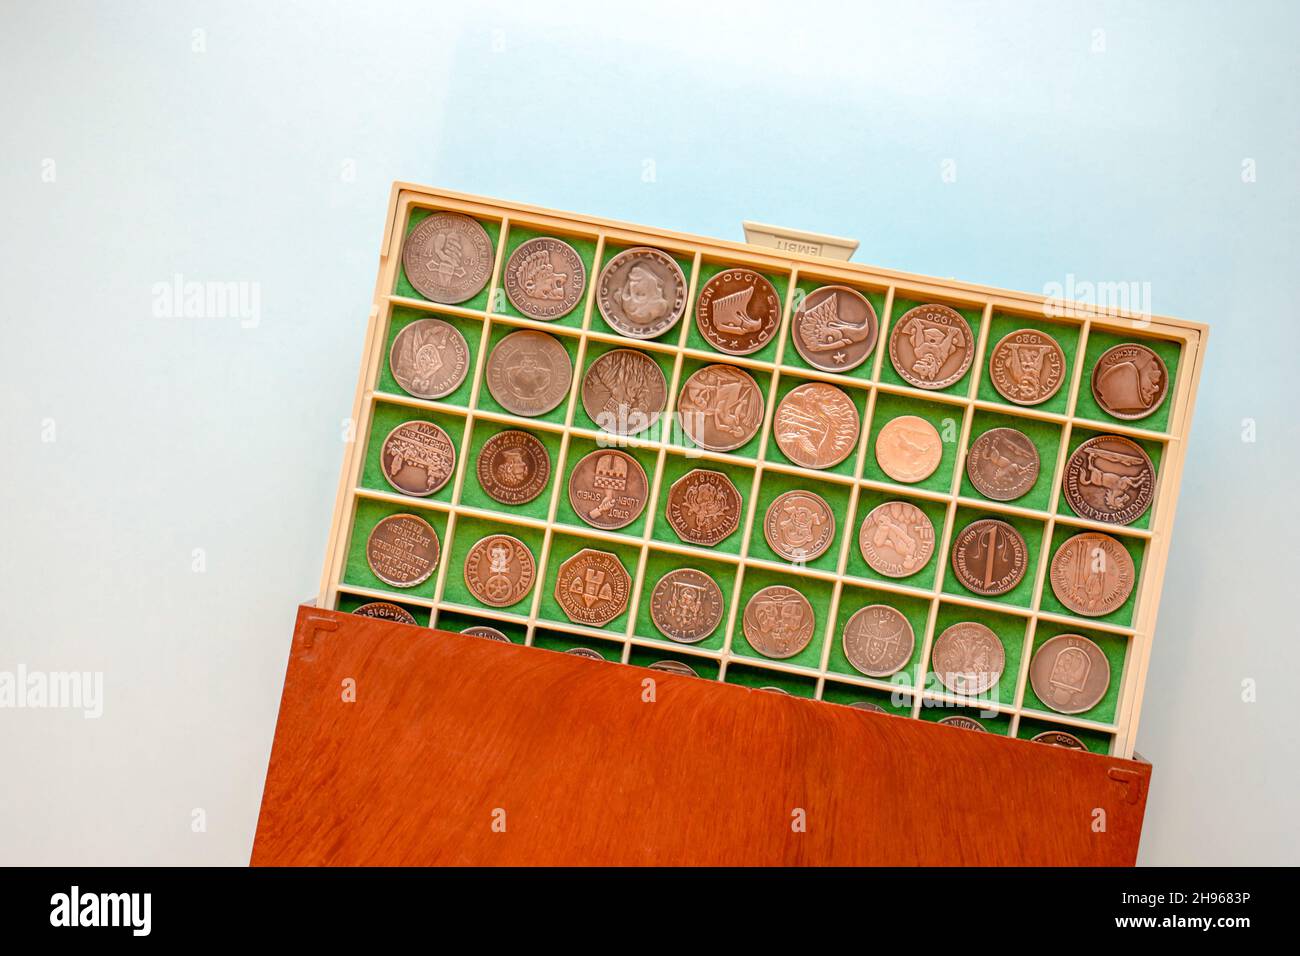 24 Numismatologist Images, Stock Photos, 3D objects, & Vectors